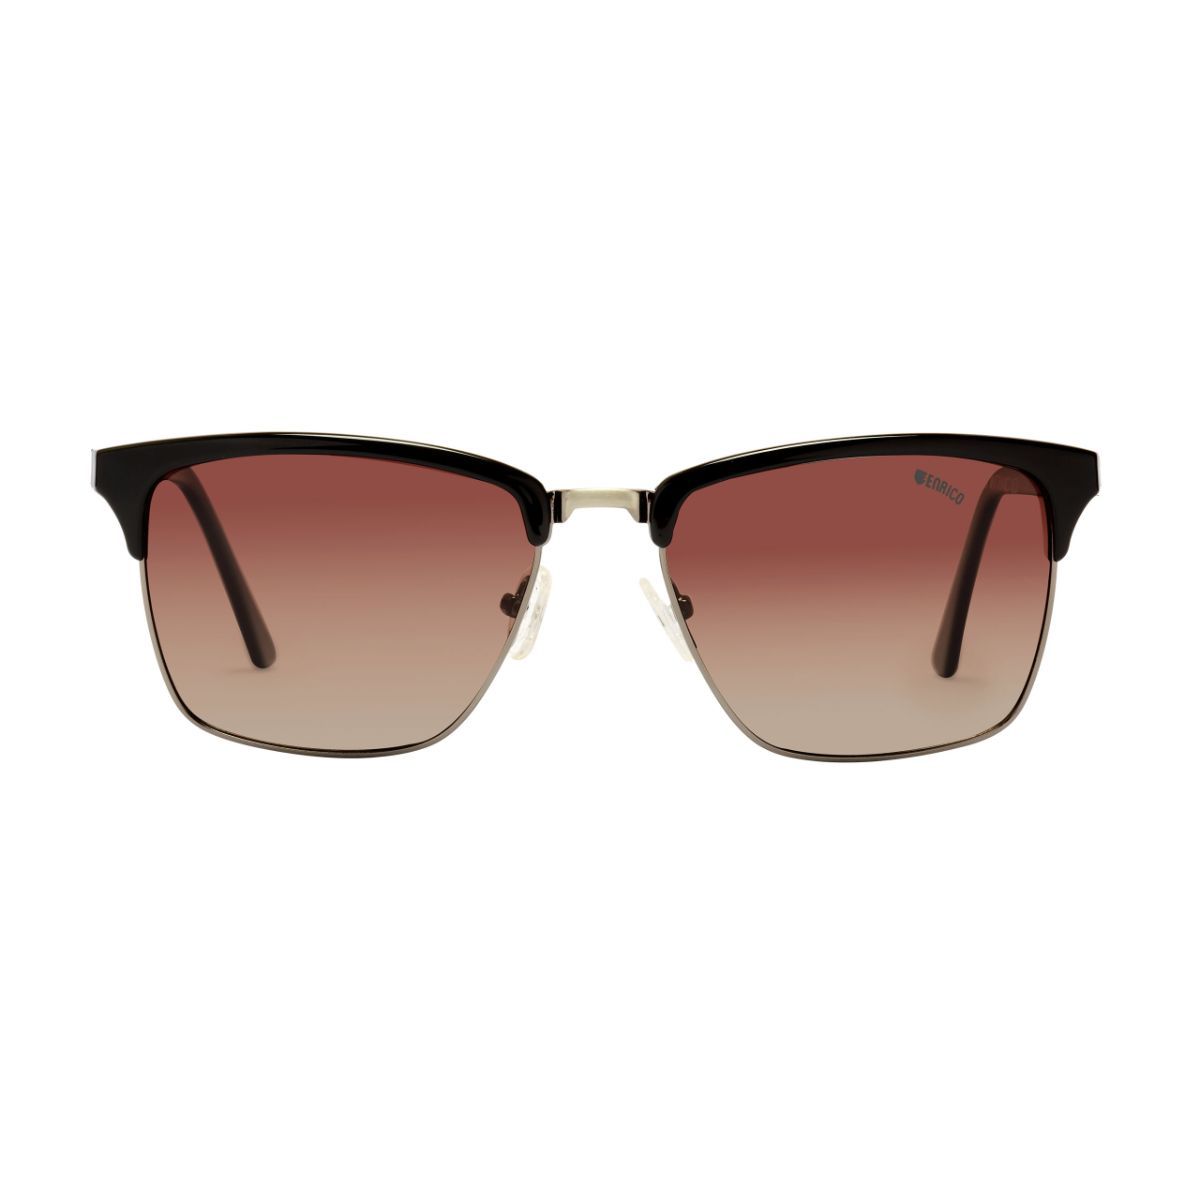 Enrico Lura-Brown UV protected Polarized Male Sunglasses